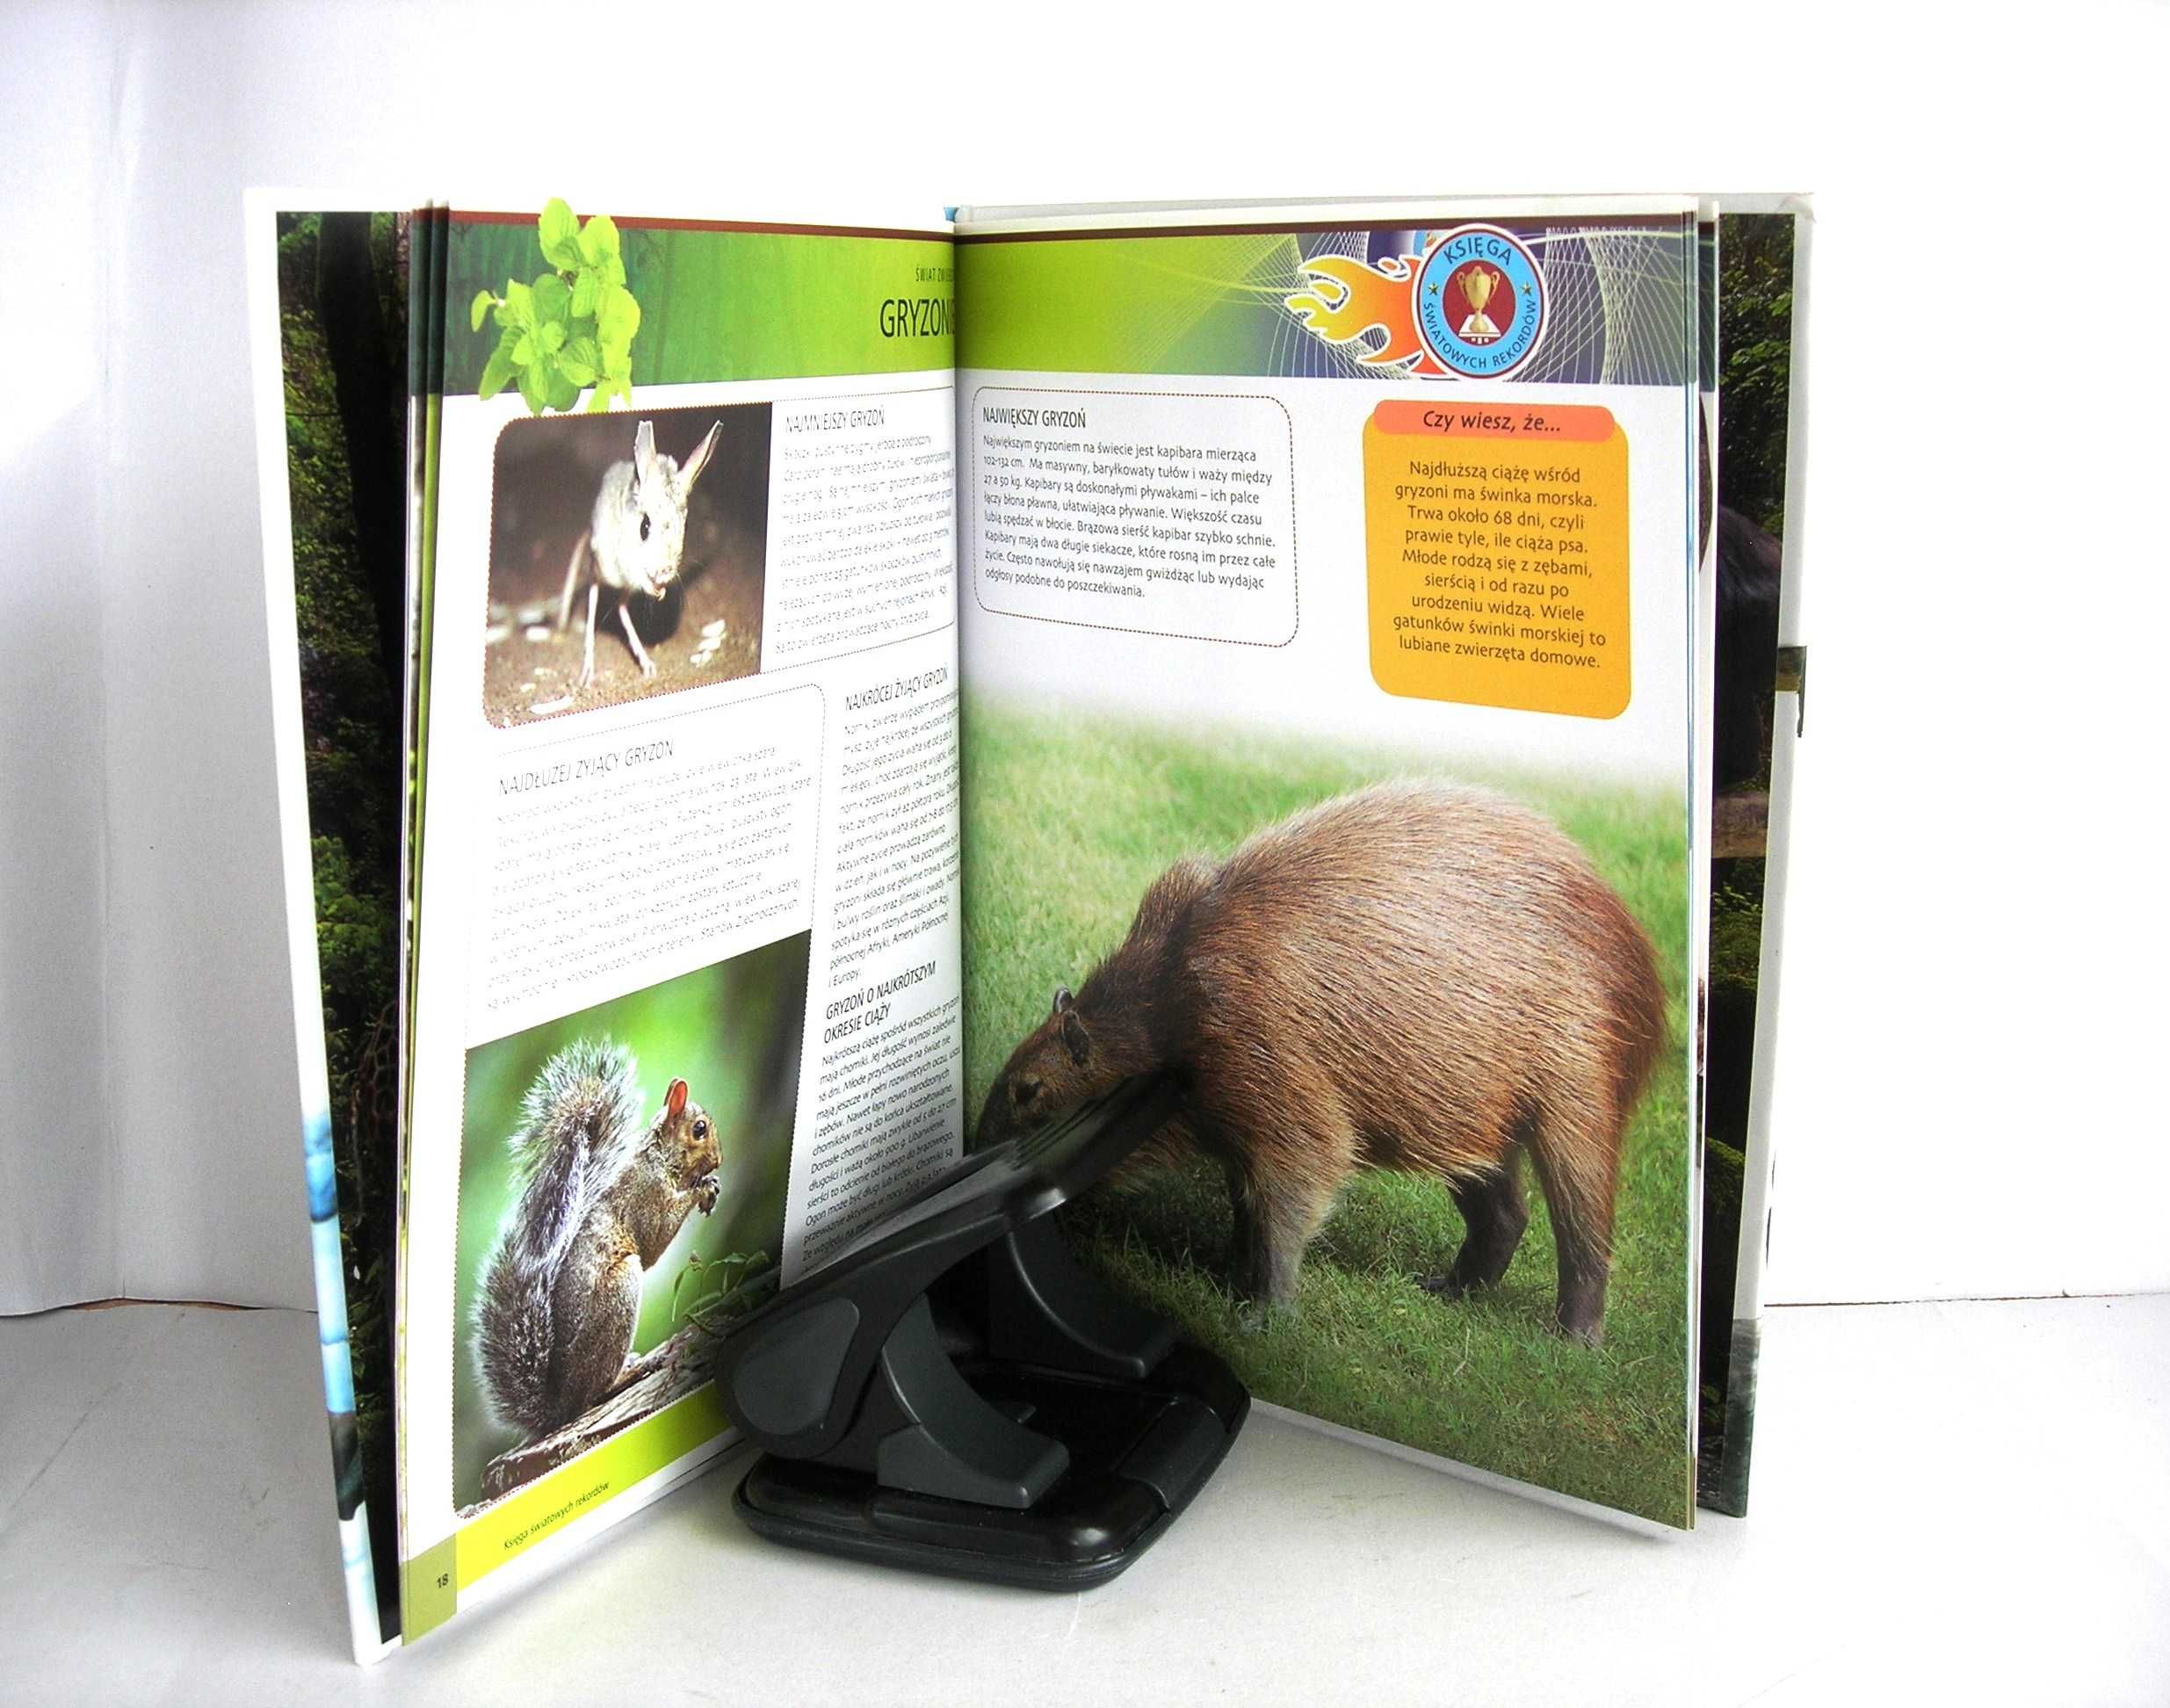 "Księga światowych rekordów - świat zwierząt" wyd. Book House 2008